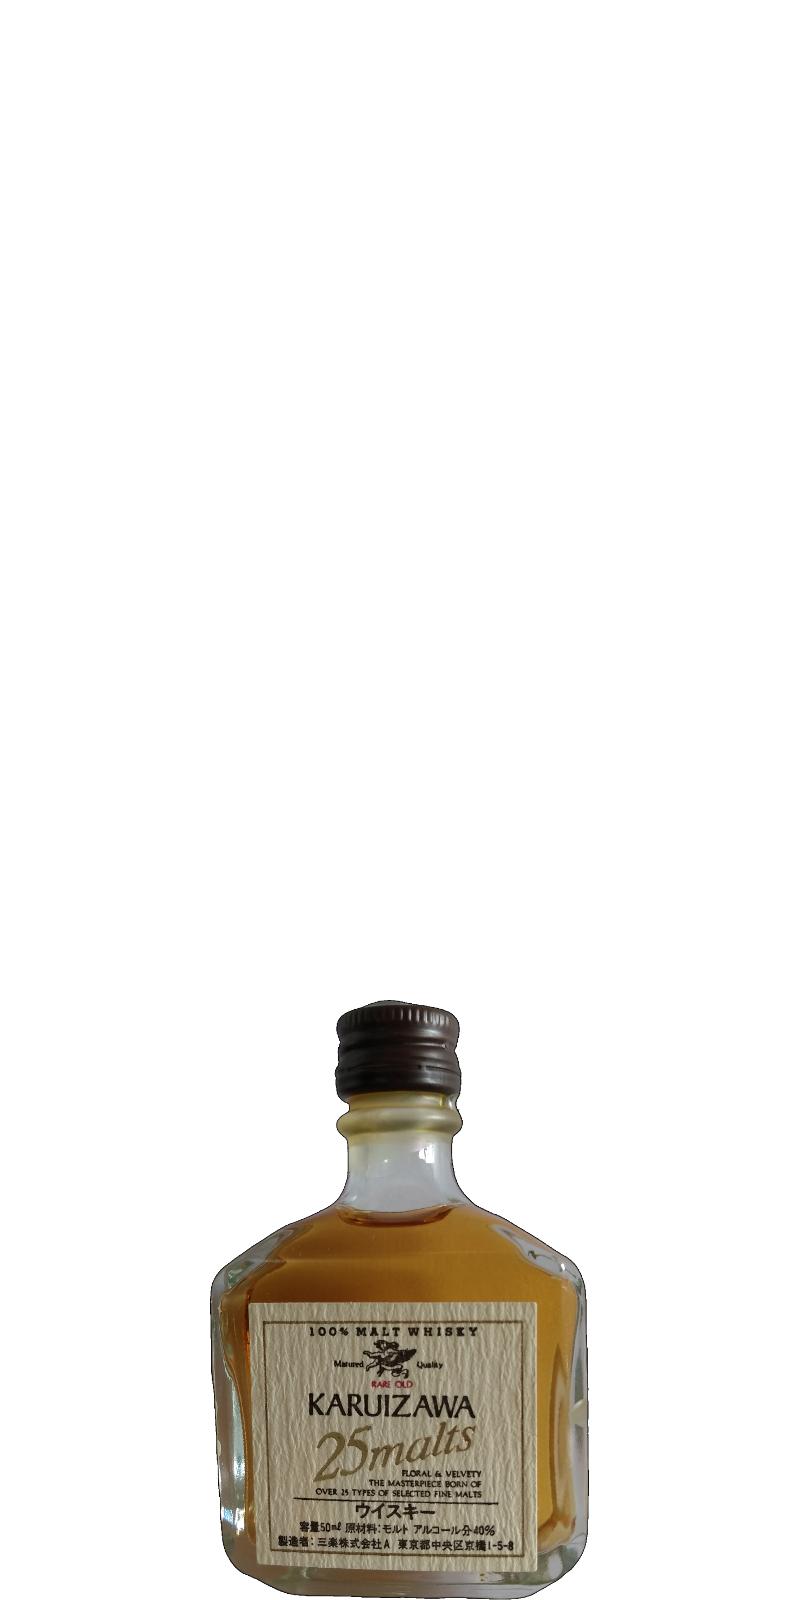 Karuizawa 25 malts - Ratings and reviews - Whiskybase